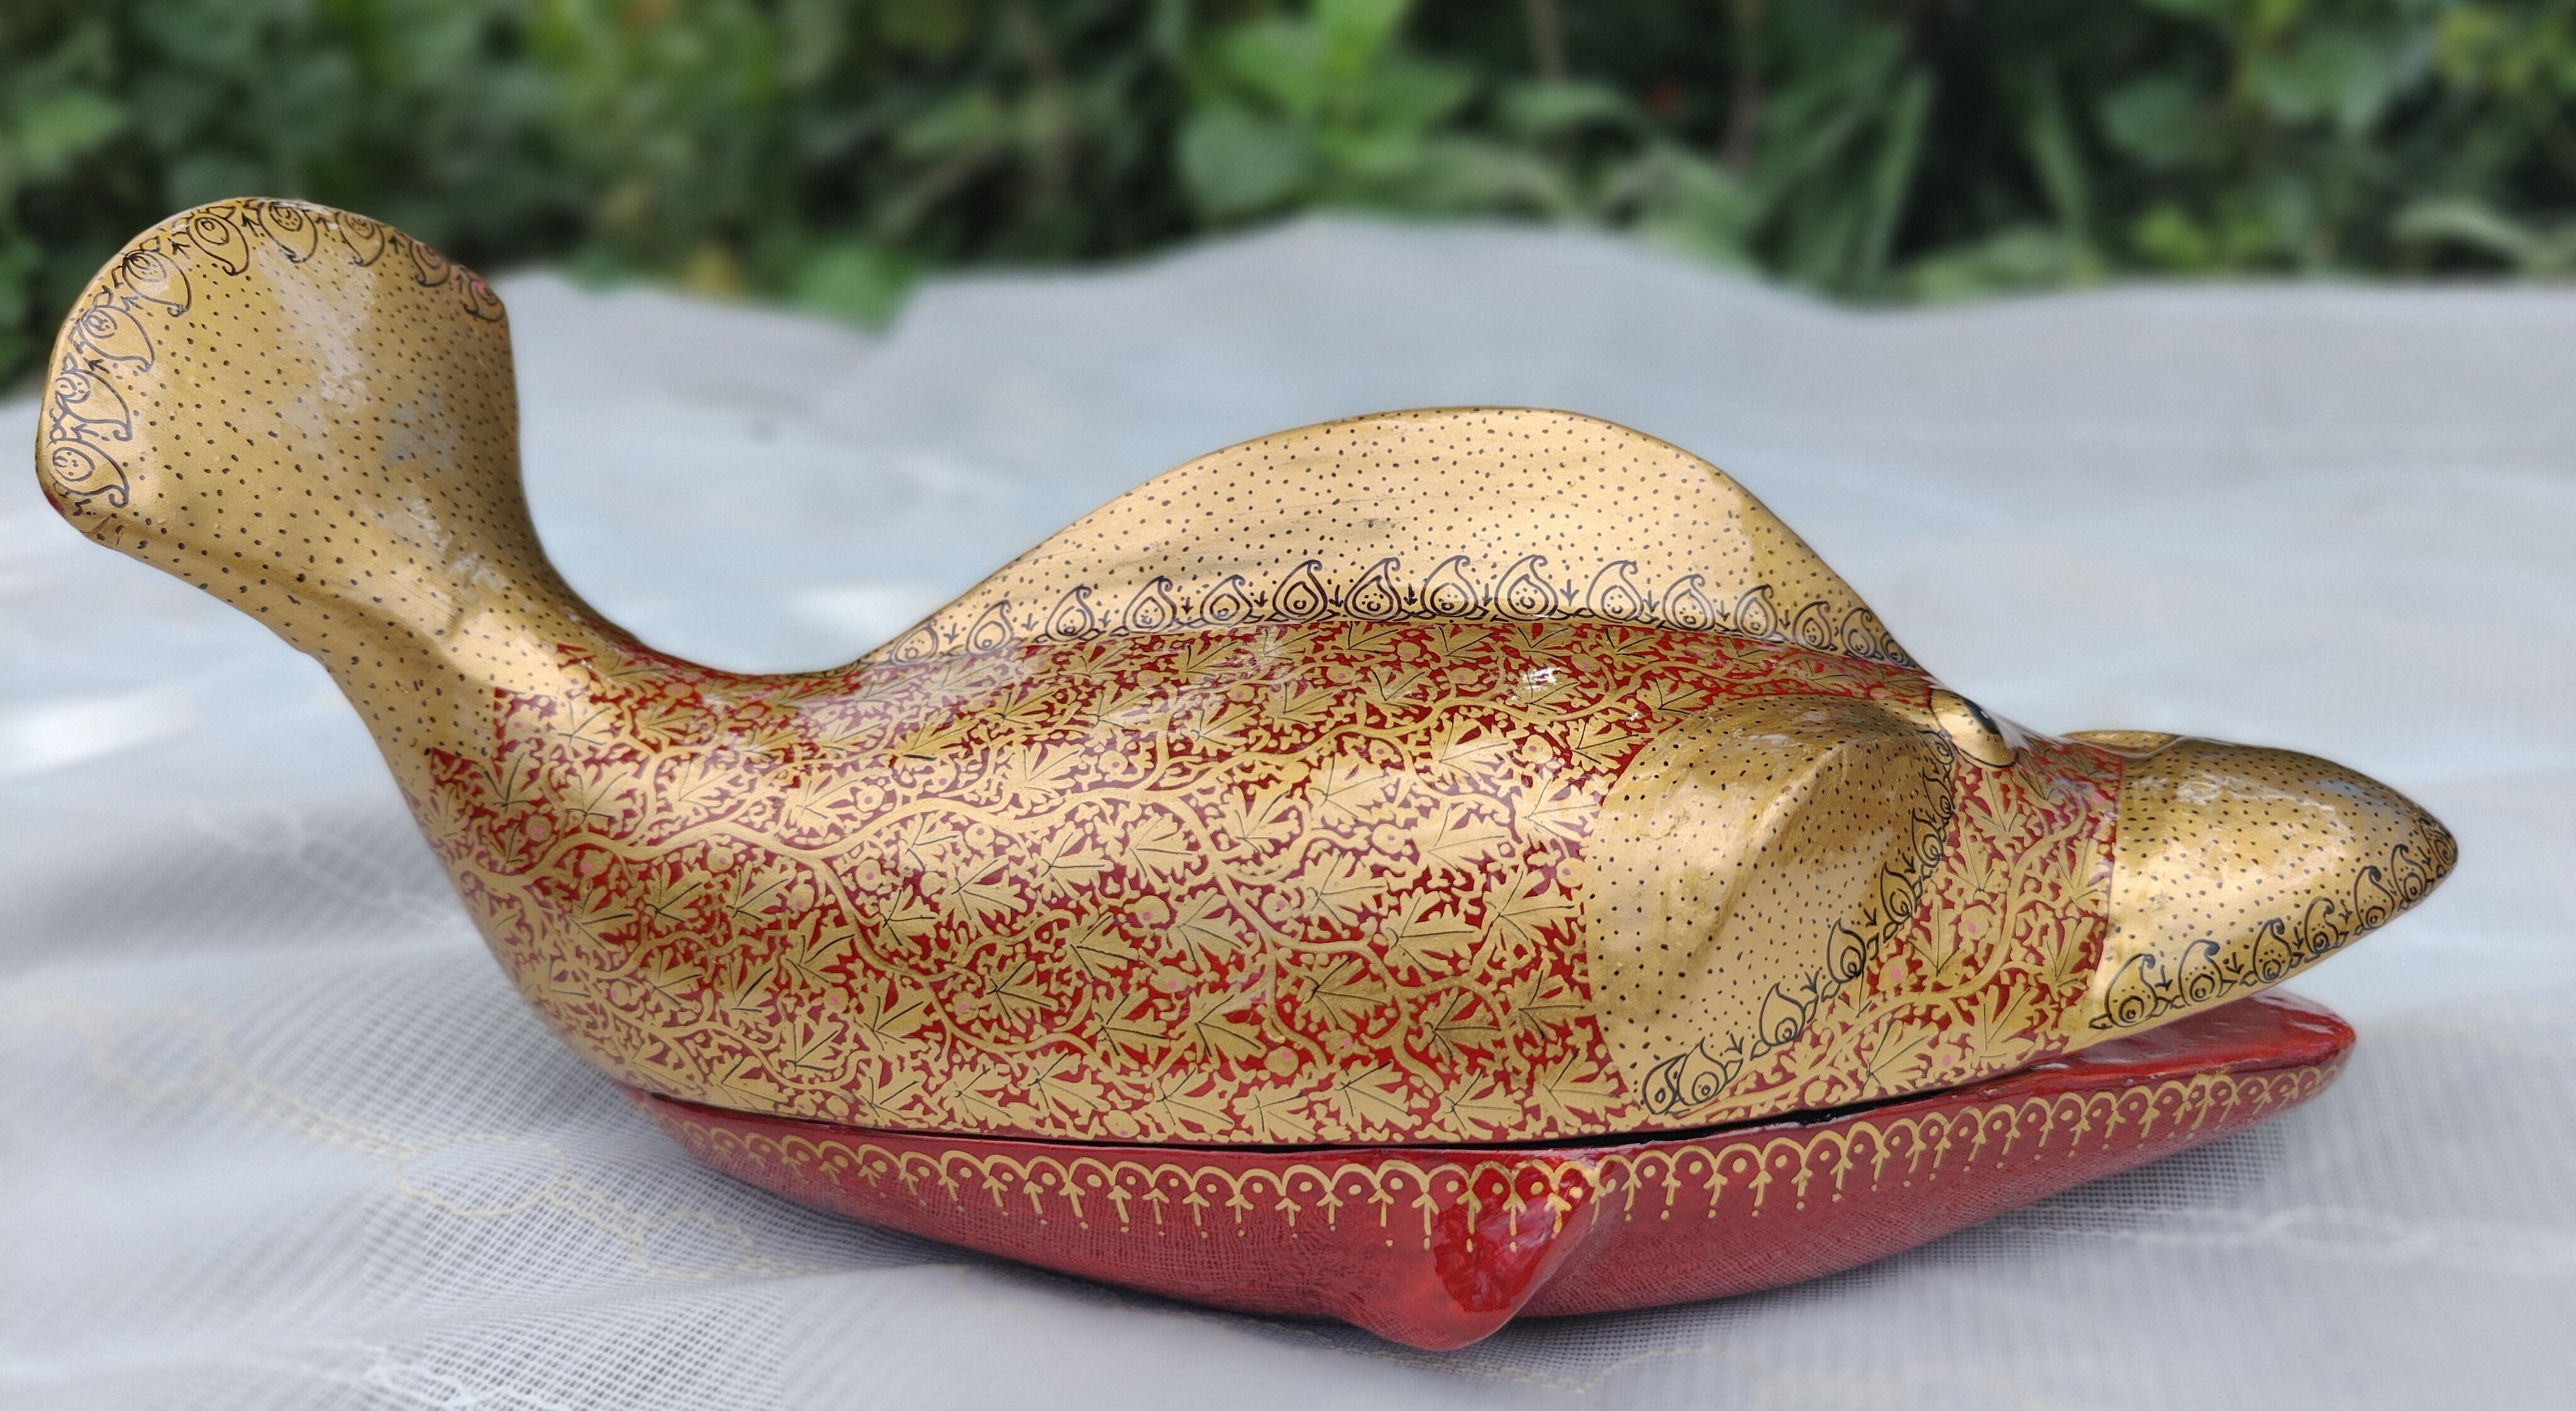 Sonth x Fayaz Ahmad Jan - Papier-mâché Decorative Red and Gold Fish